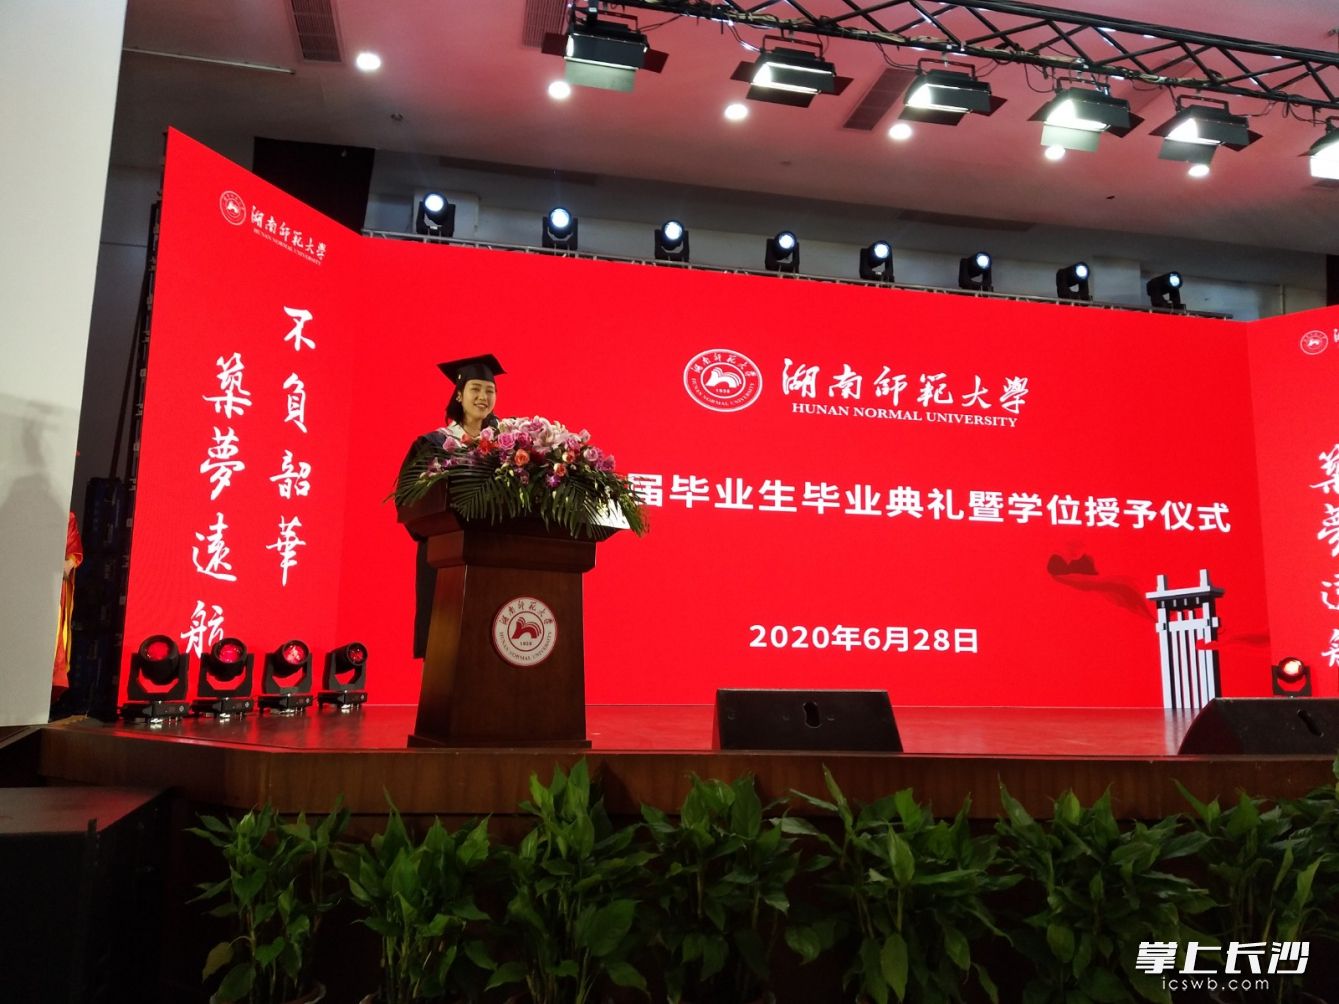 湖南师大文学院2016级汉语国际教育专业本科生高子妍作为毕业生代表发言。